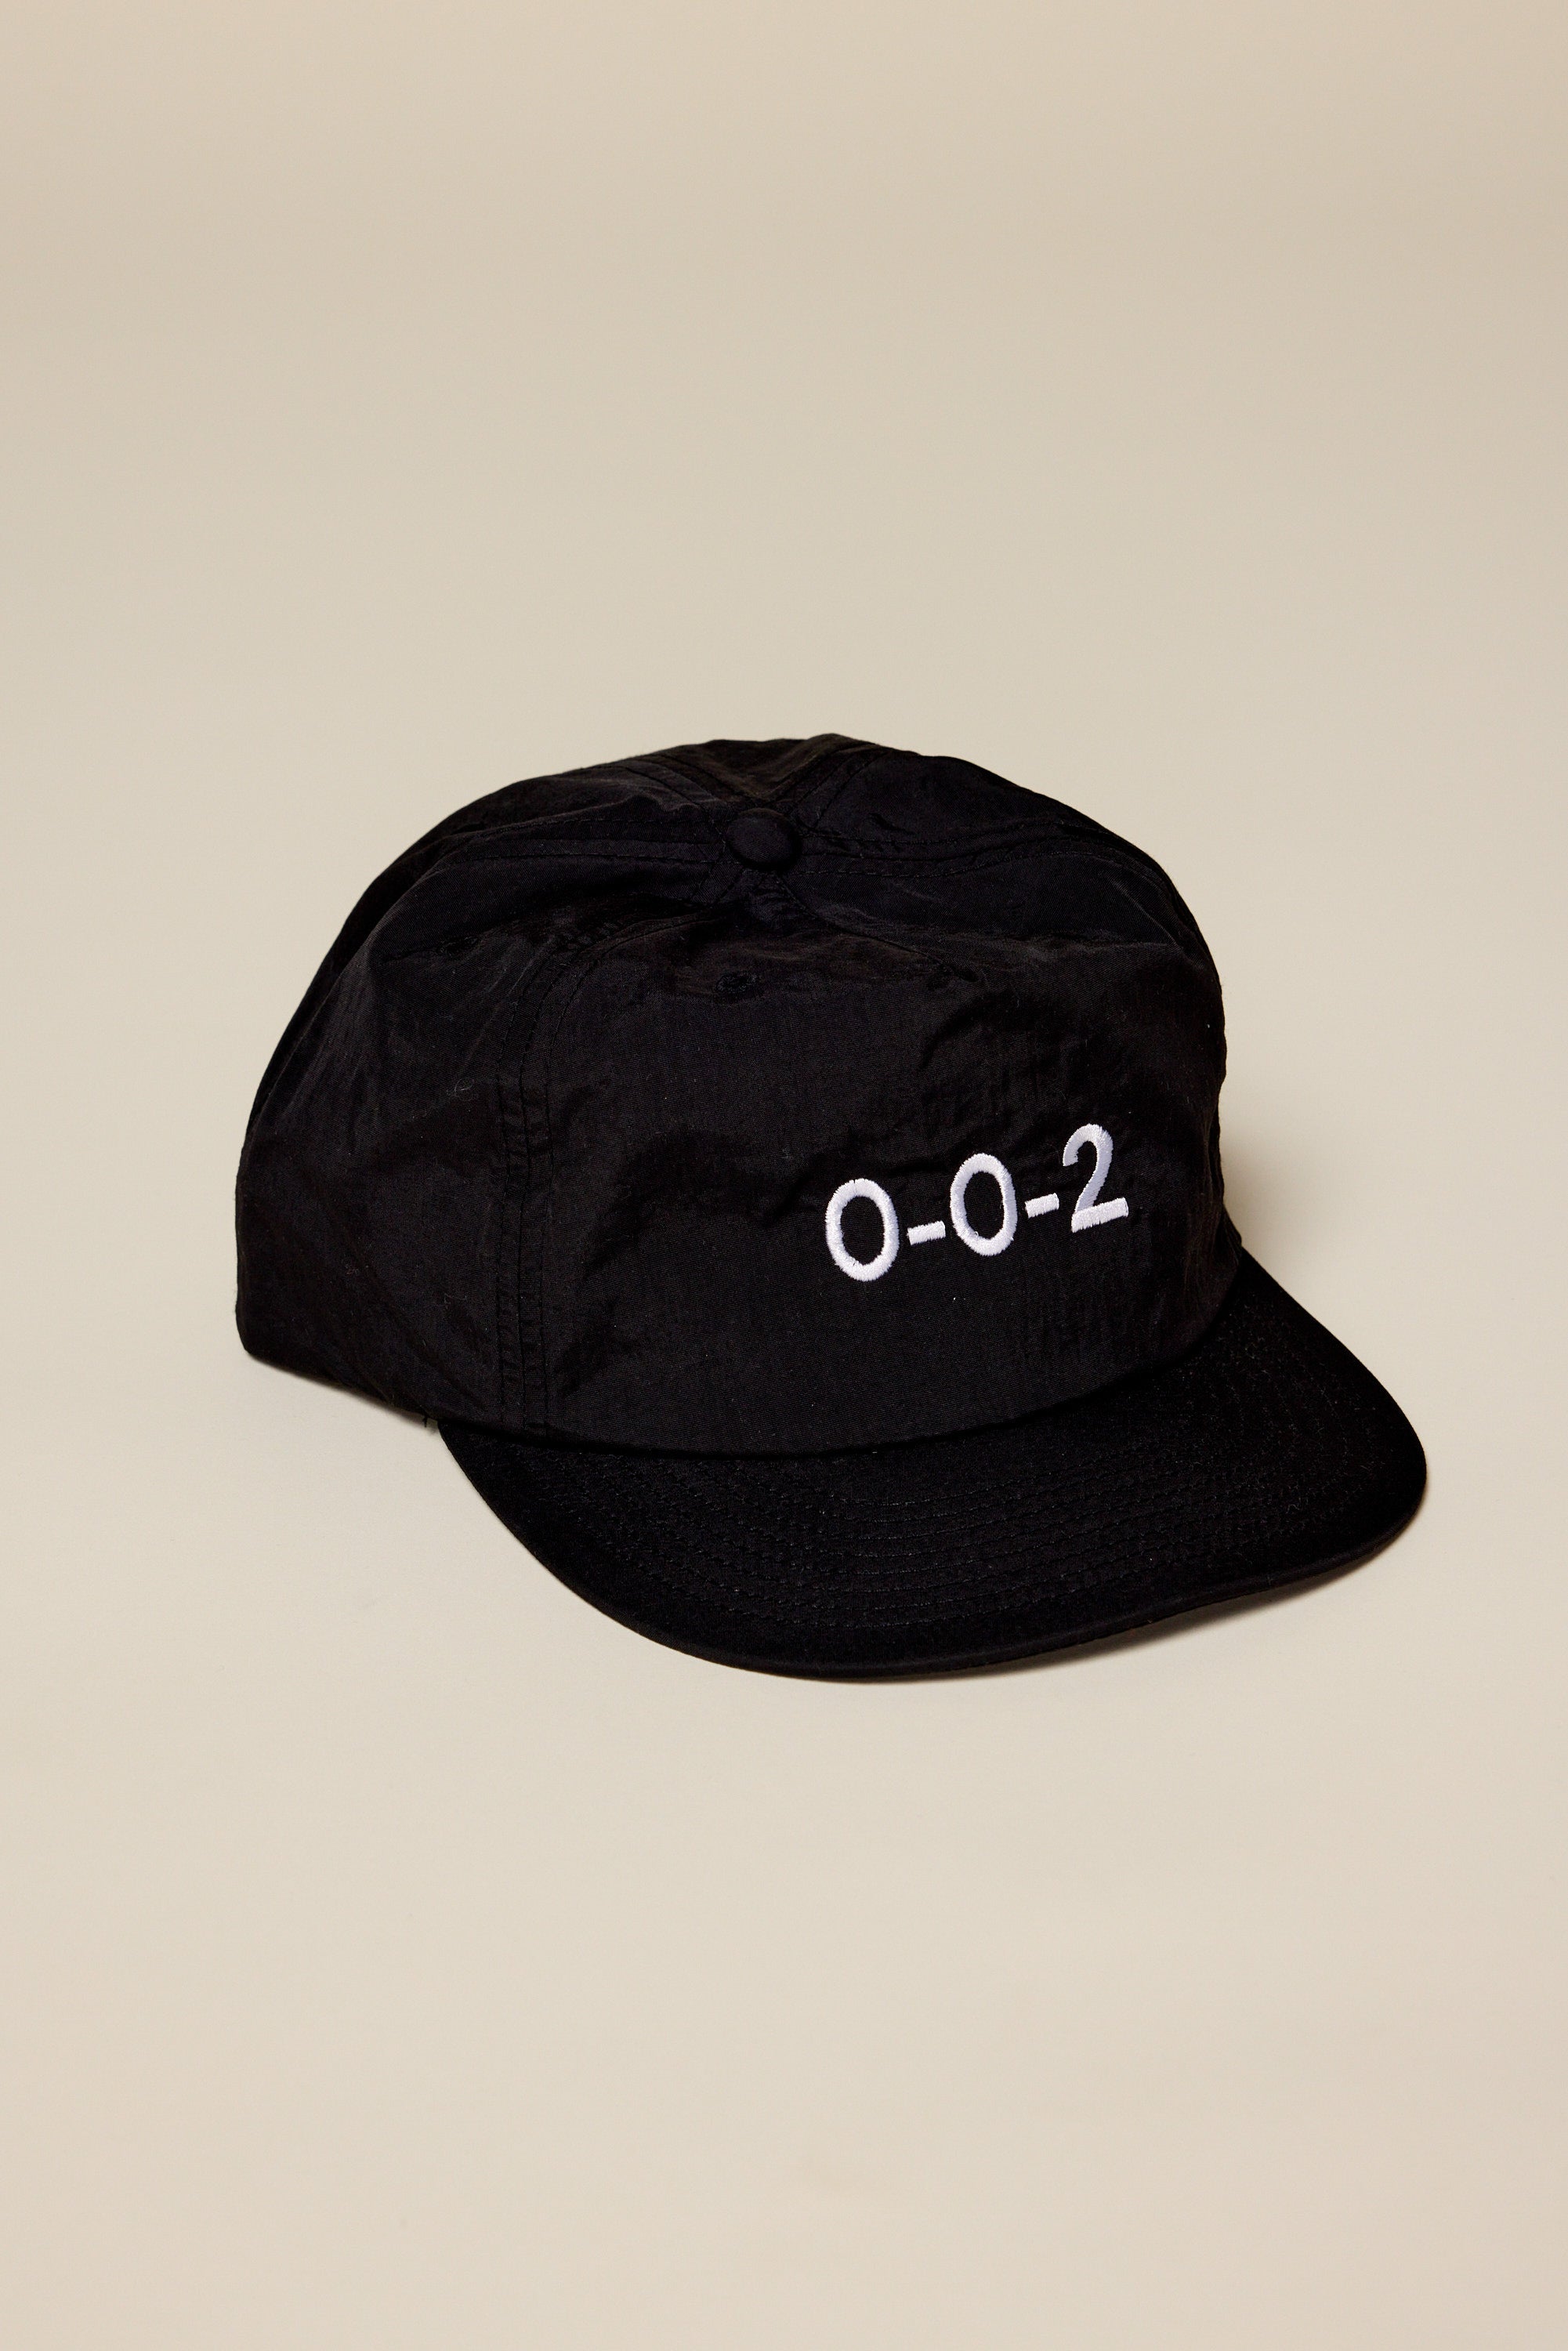 0-0-2 Court Hat